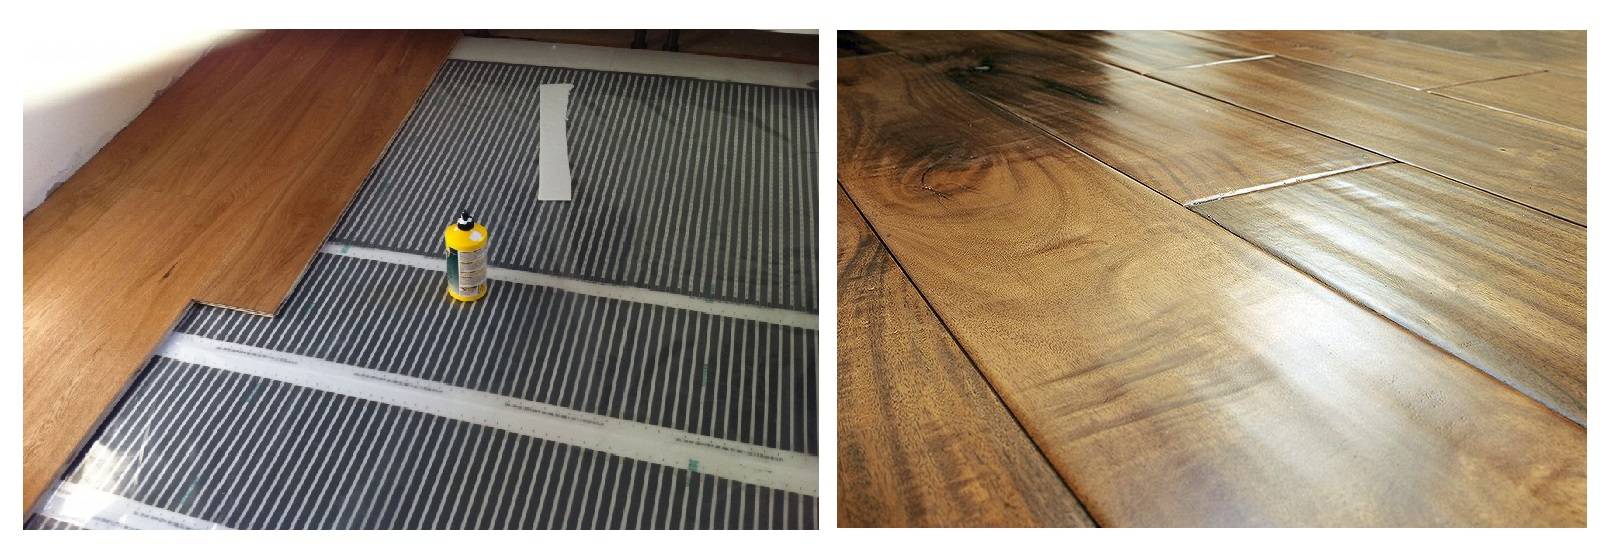 Можно ли делать монтаж напольной системы обогрева под ламинат на старый деревянный пол?